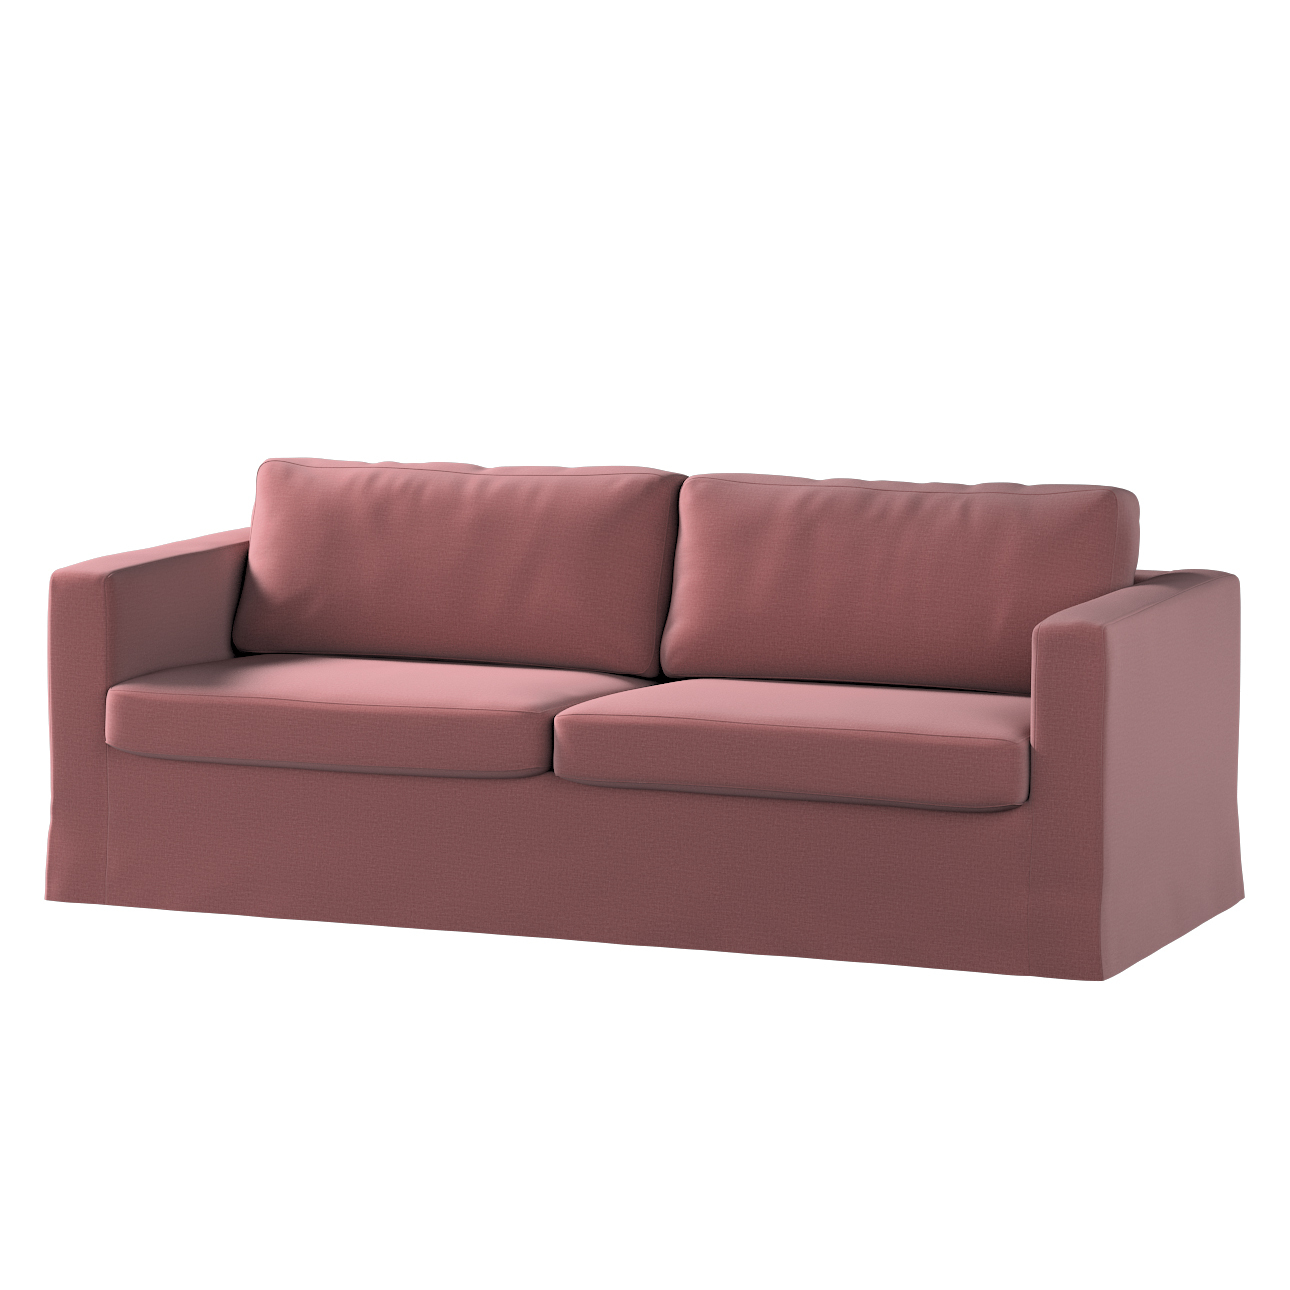 Bezug für Karlstad 3-Sitzer Sofa nicht ausklappbar, lang, violett, Bezug fü günstig online kaufen